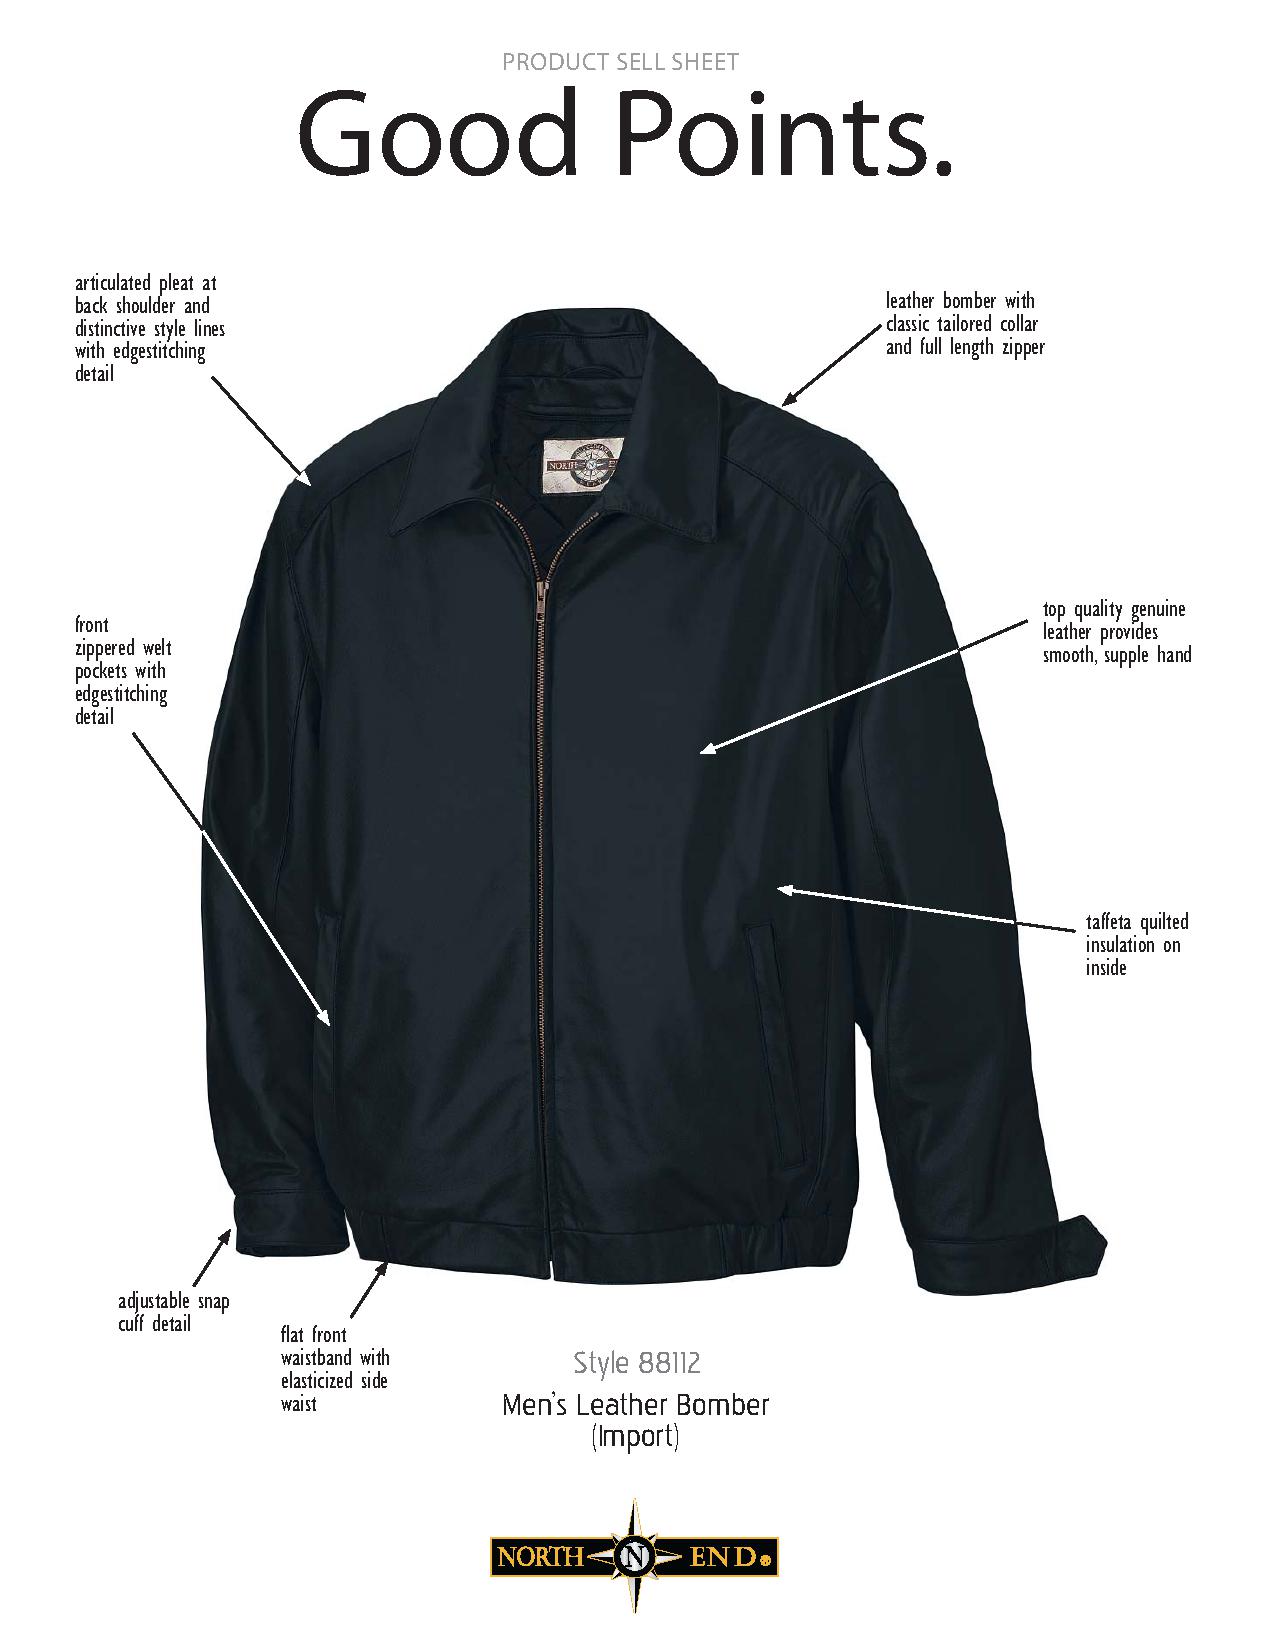 Ash City UTK 1 Warm.Logik 88112 - Men's Leather Bomber Jacket